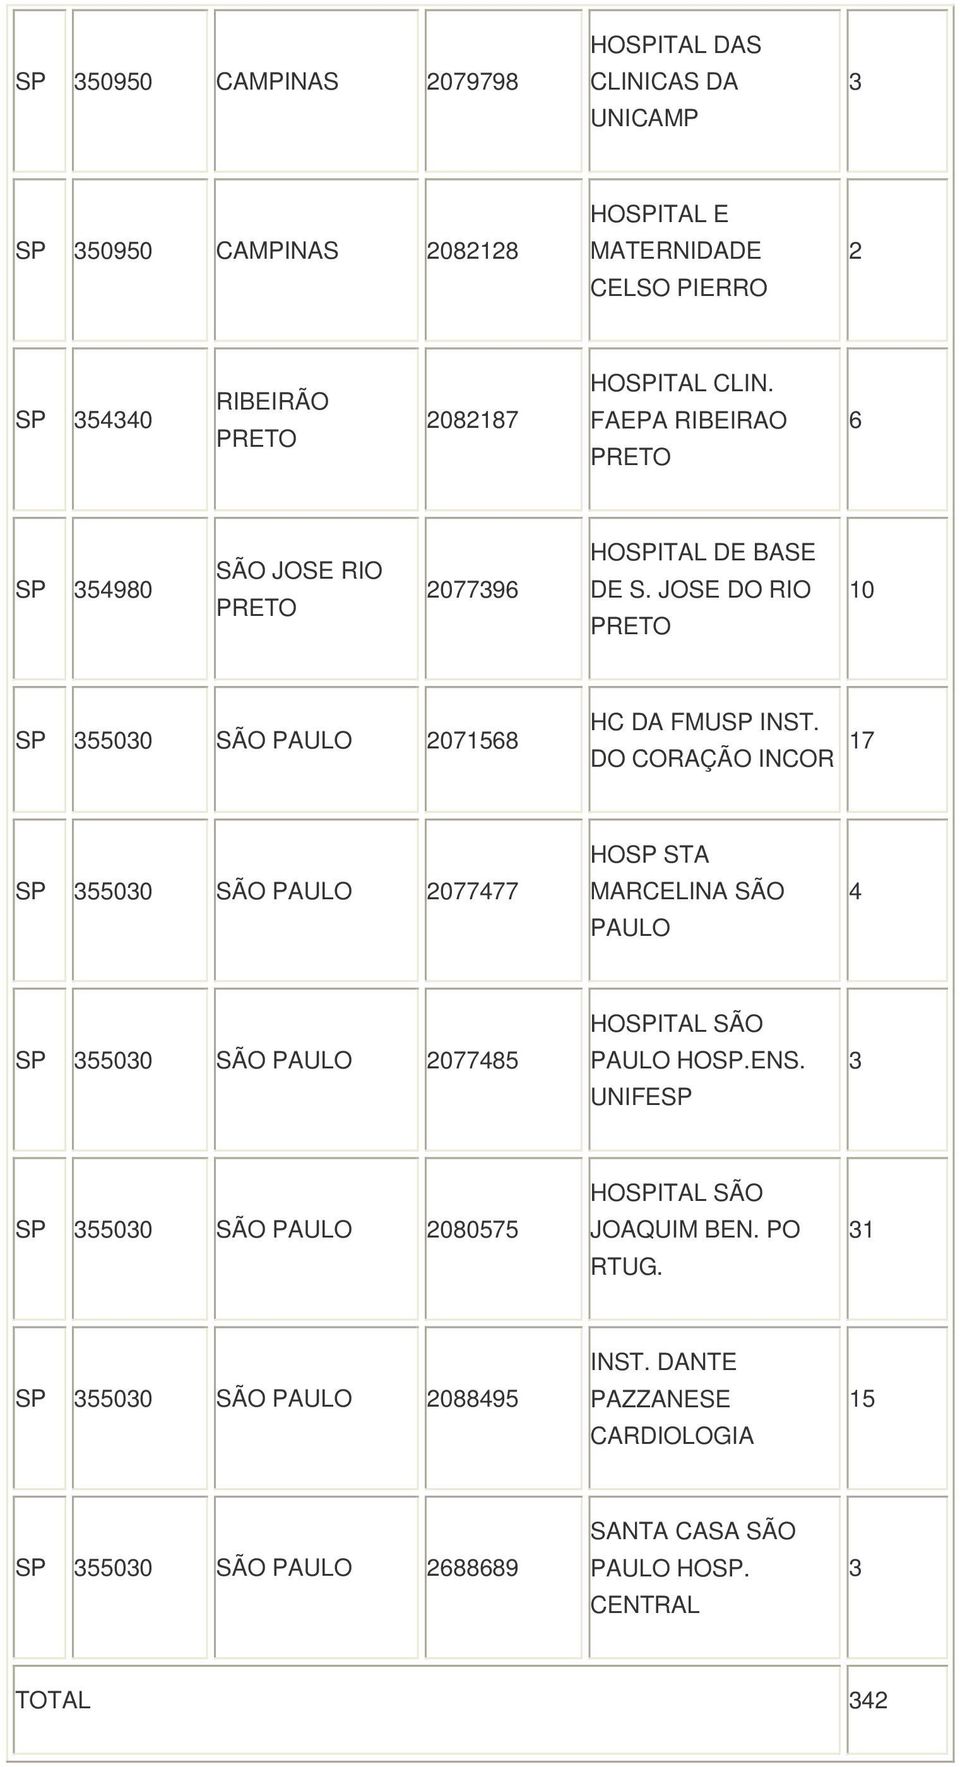 DO CORAÇÃO INCOR 17 5500 SÃO PAULO 2077477 HO STA MARCELINA SÃO PAULO 4 5500 SÃO PAULO 2077485 HOITAL SÃO PAULO HO.ENS.